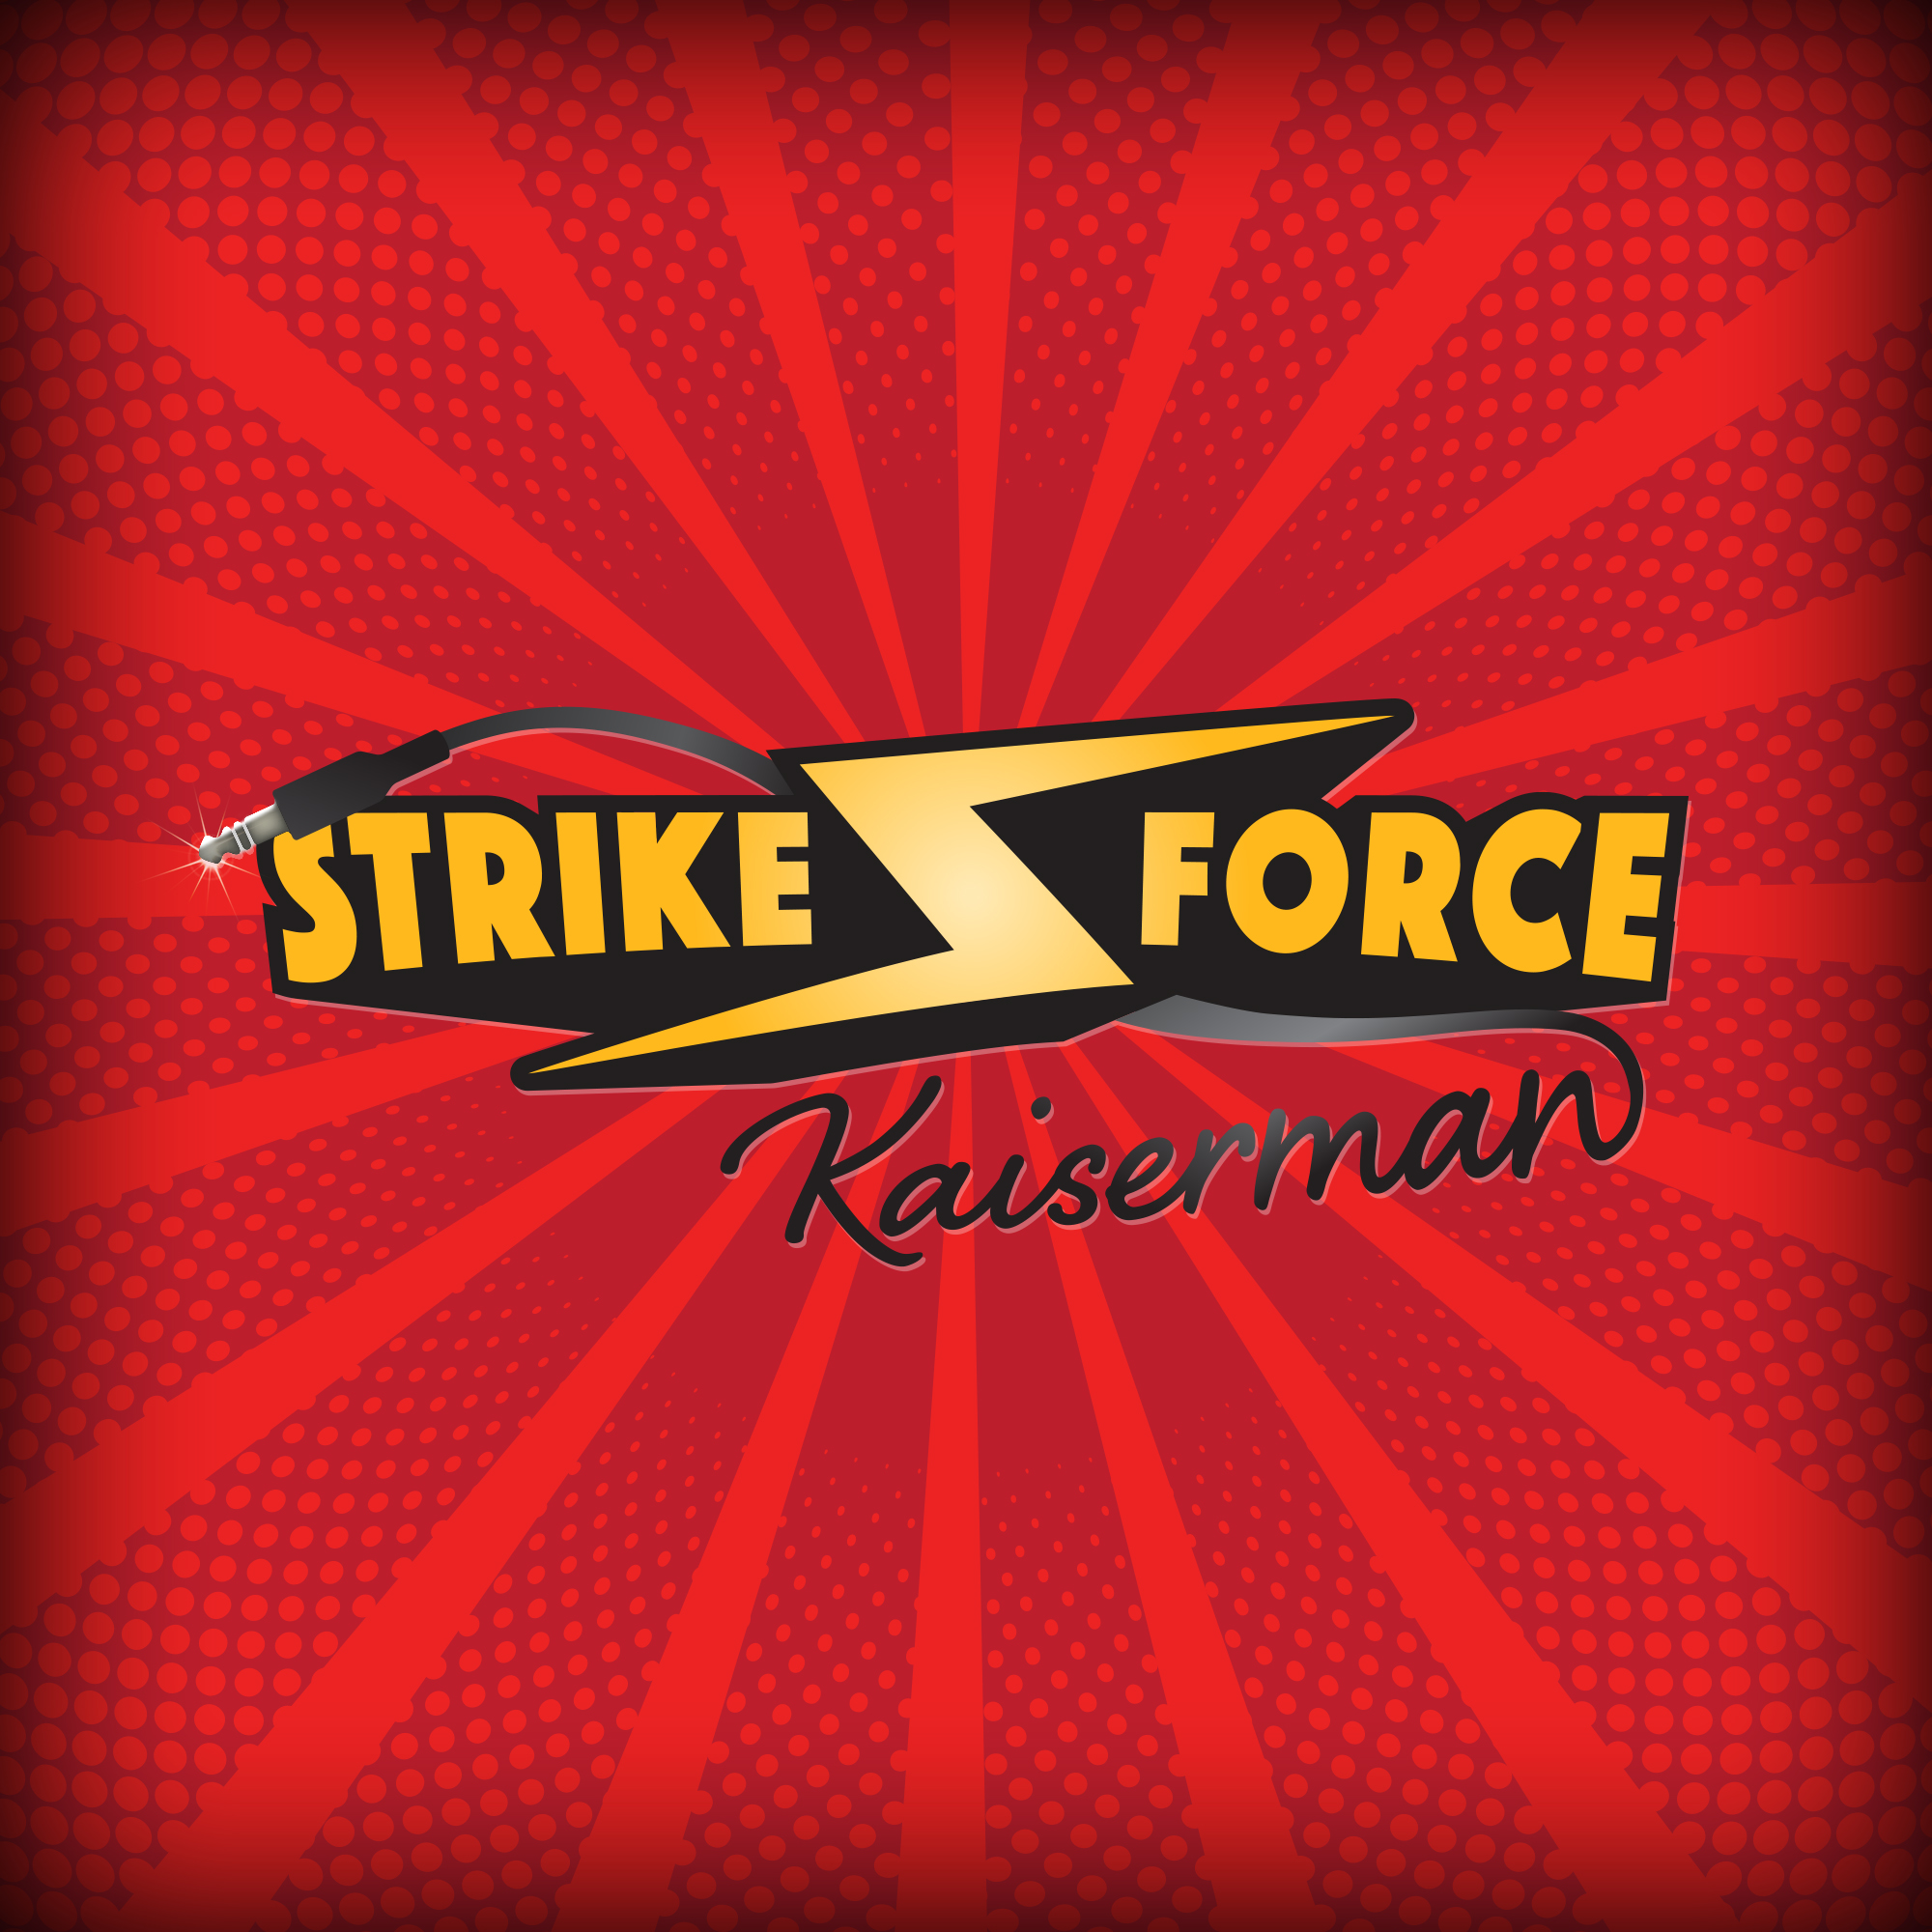 Strikeforce Kaiserman.